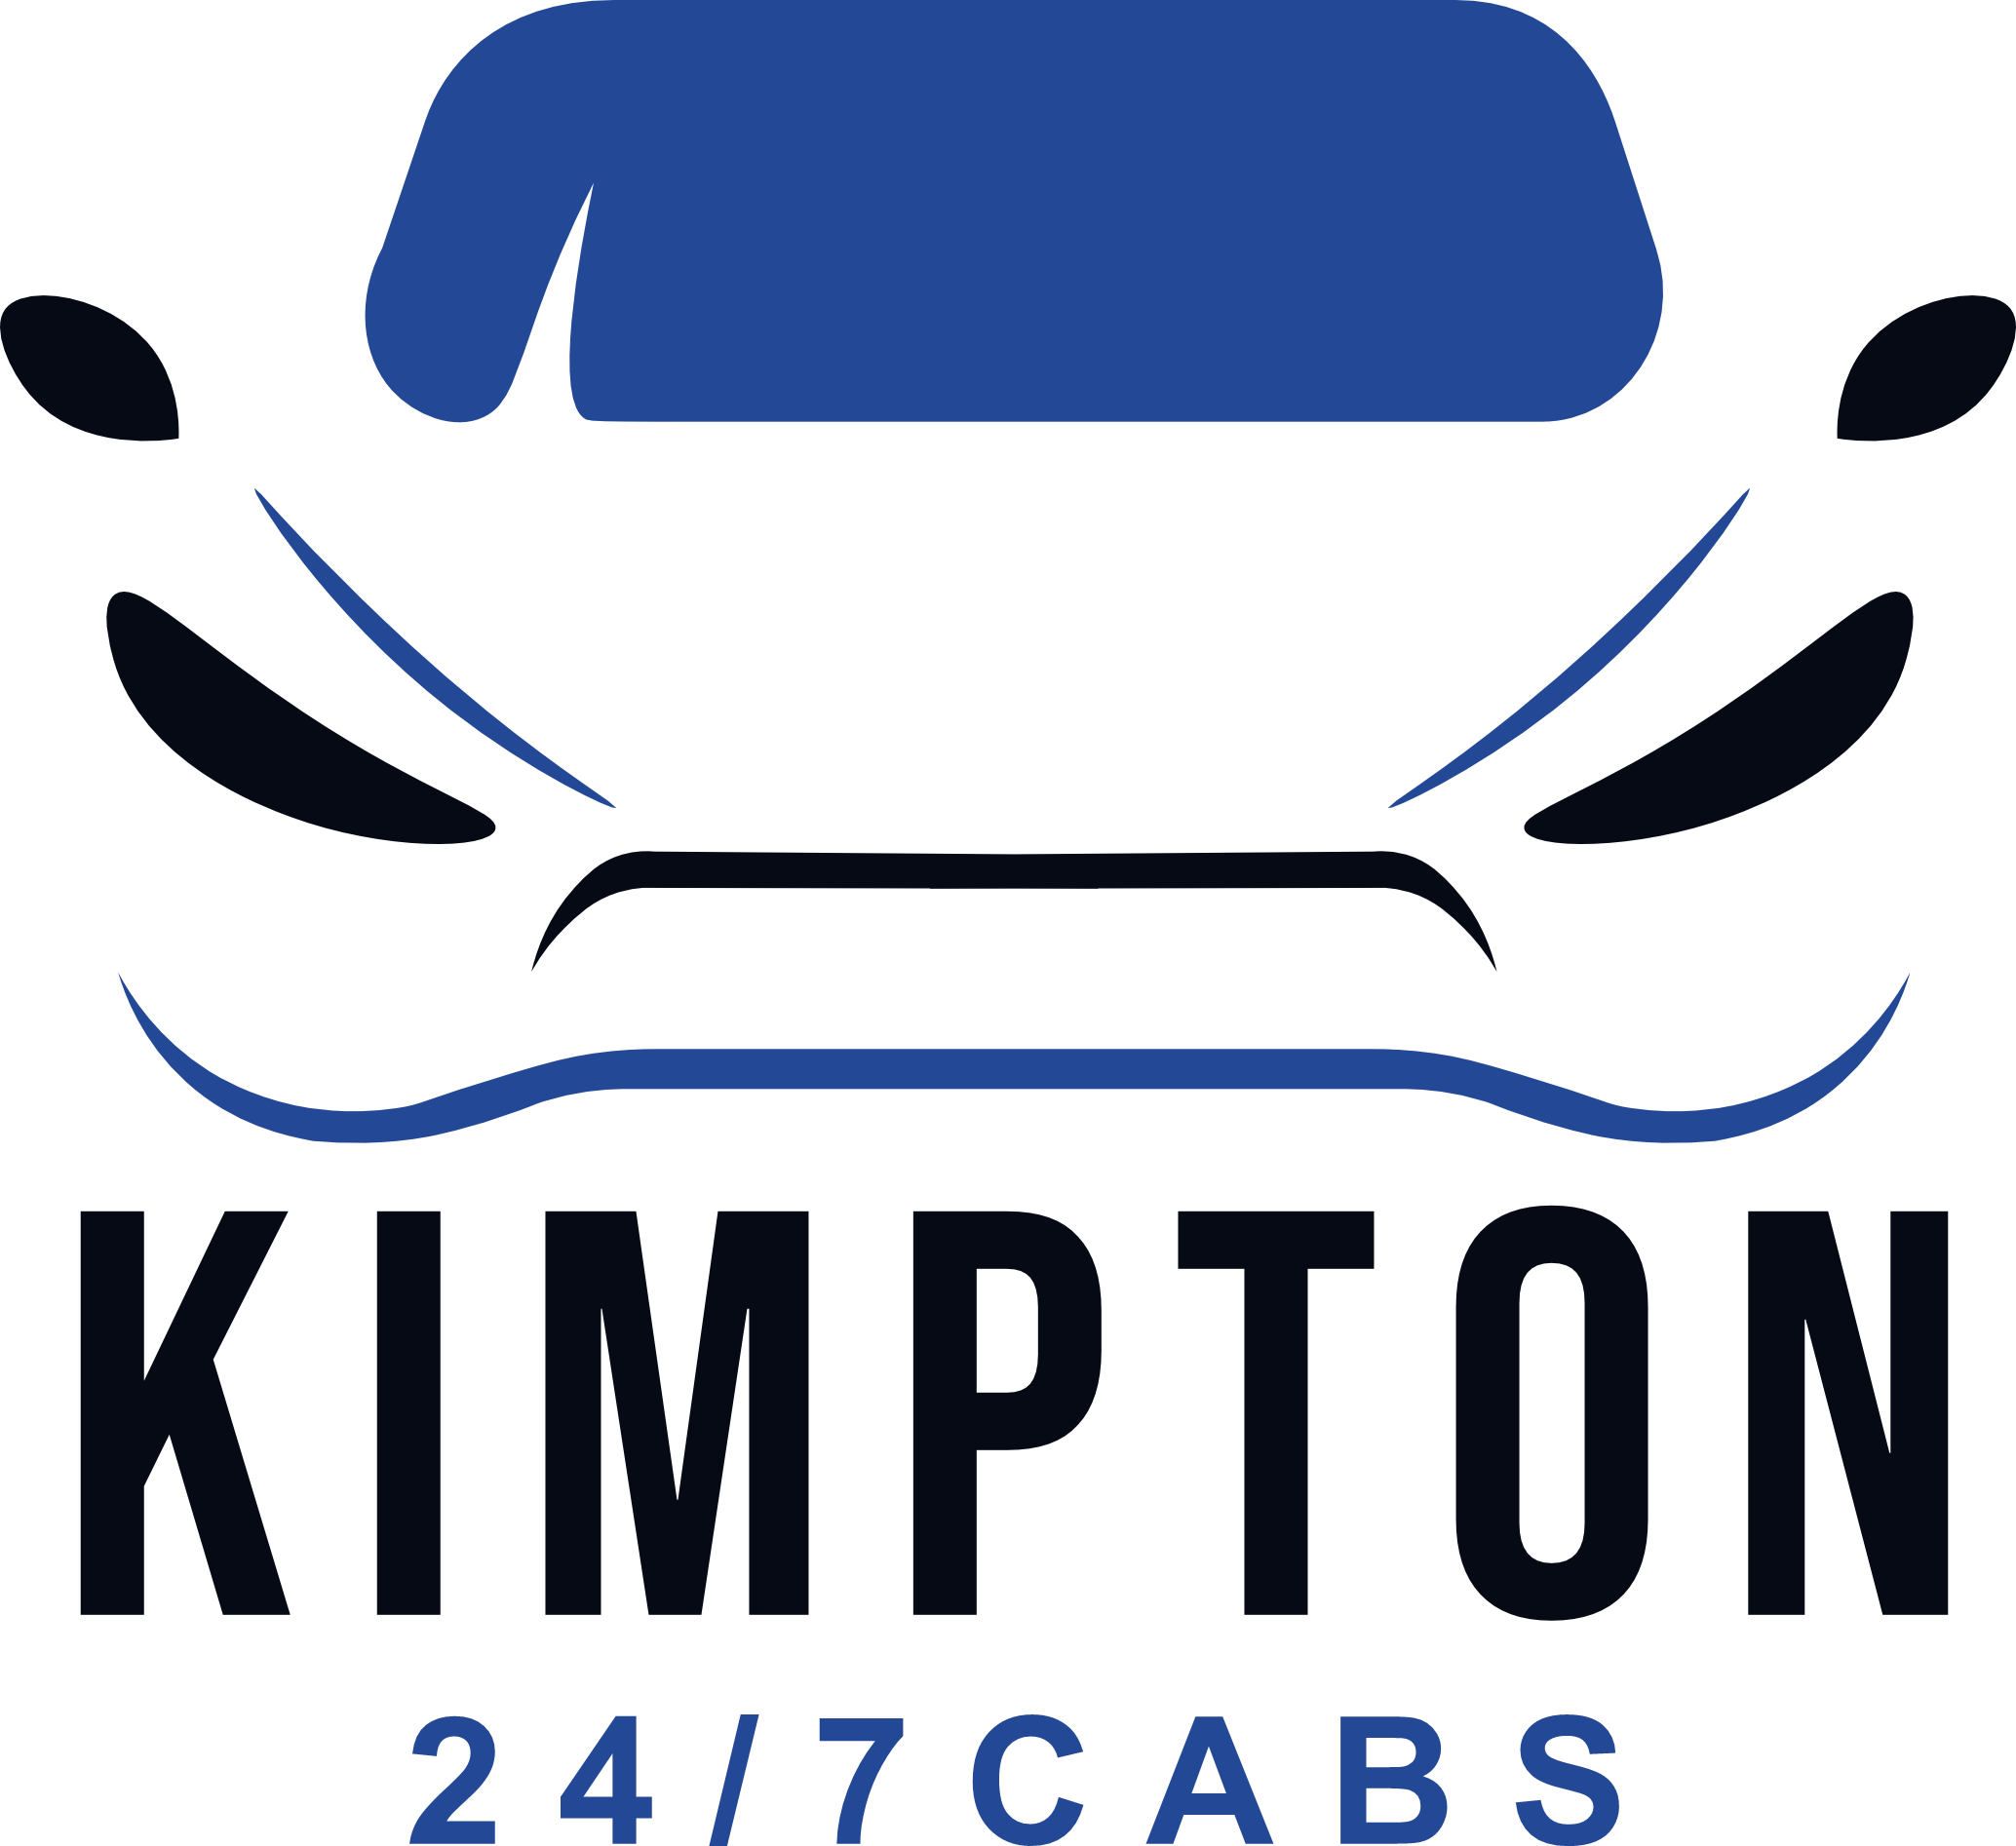 Kimpton Airport Cabs